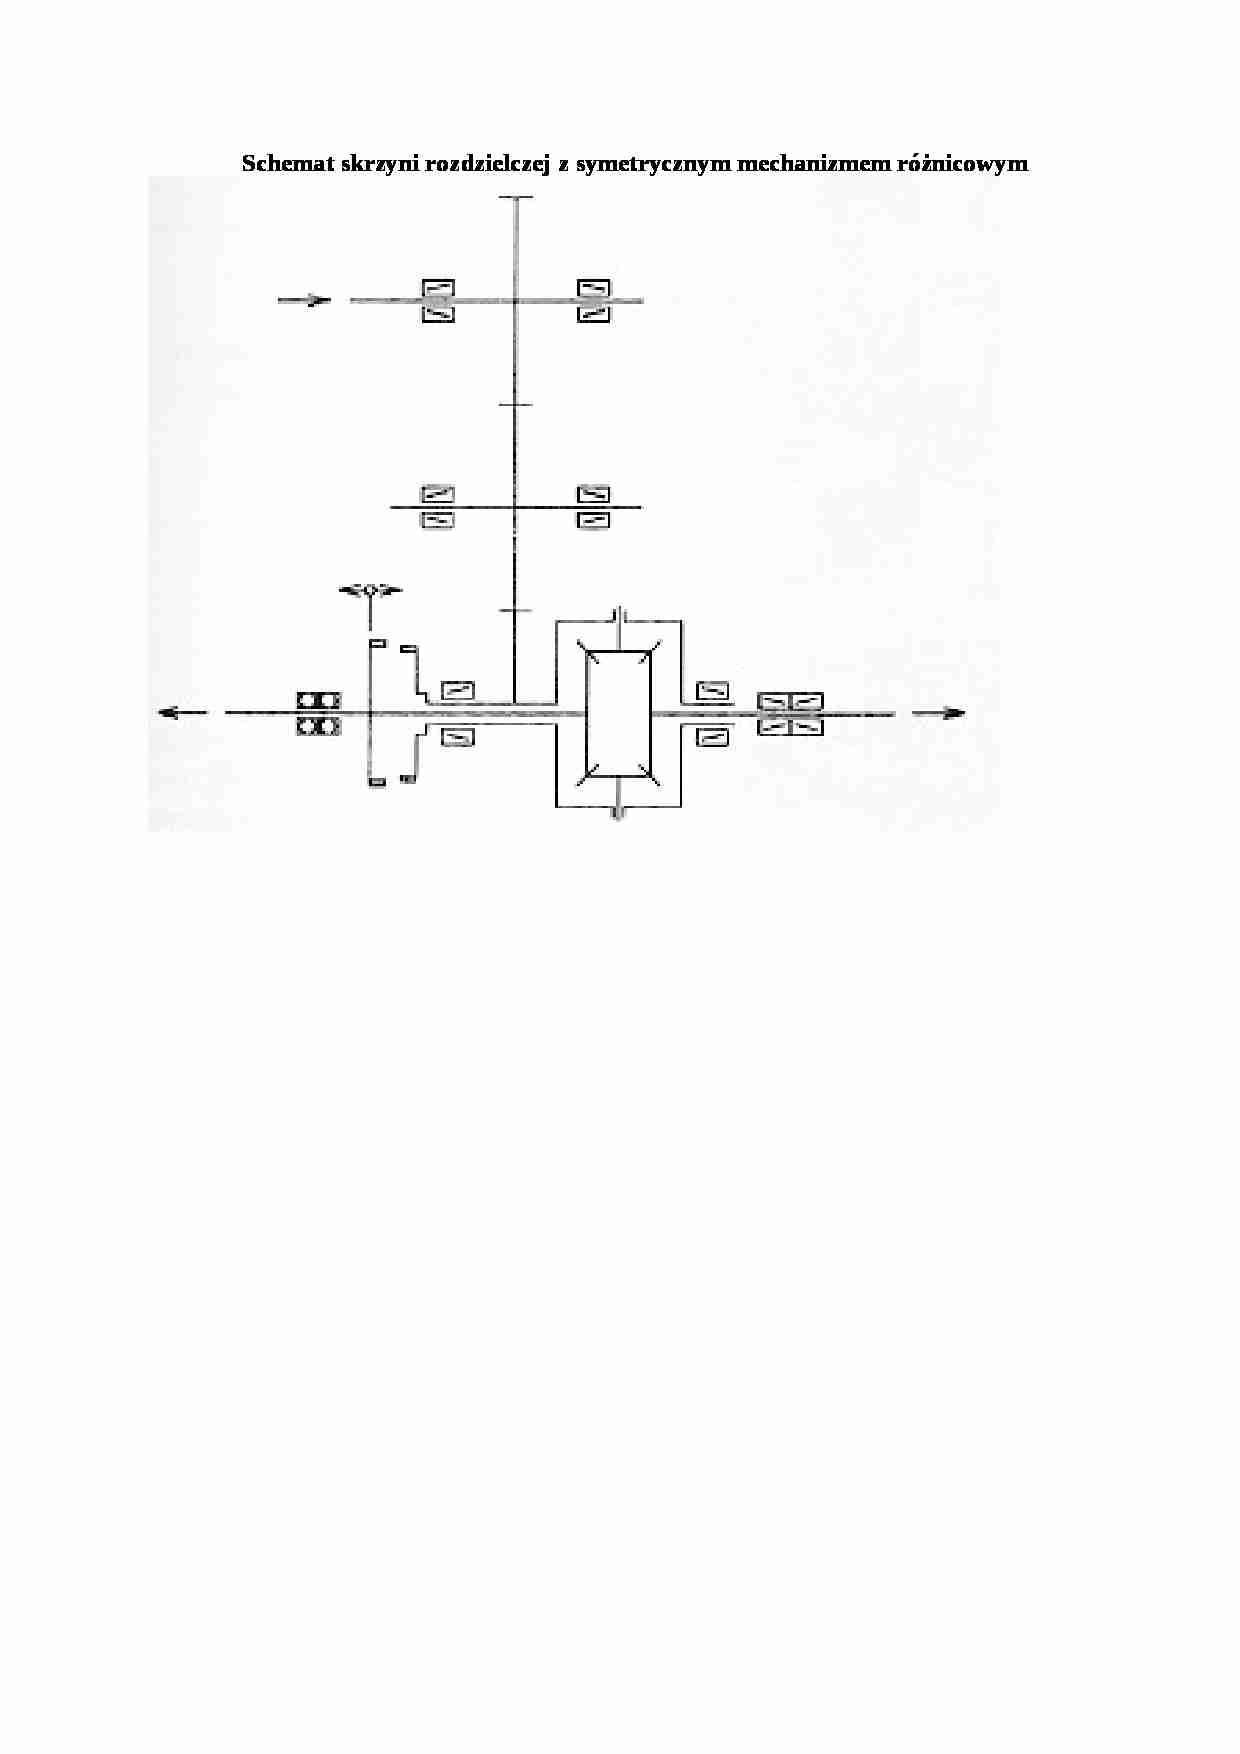 Schemat skrzyni rozdzielczej z symetrycznym mechanizmem ró_nicowym - strona 1